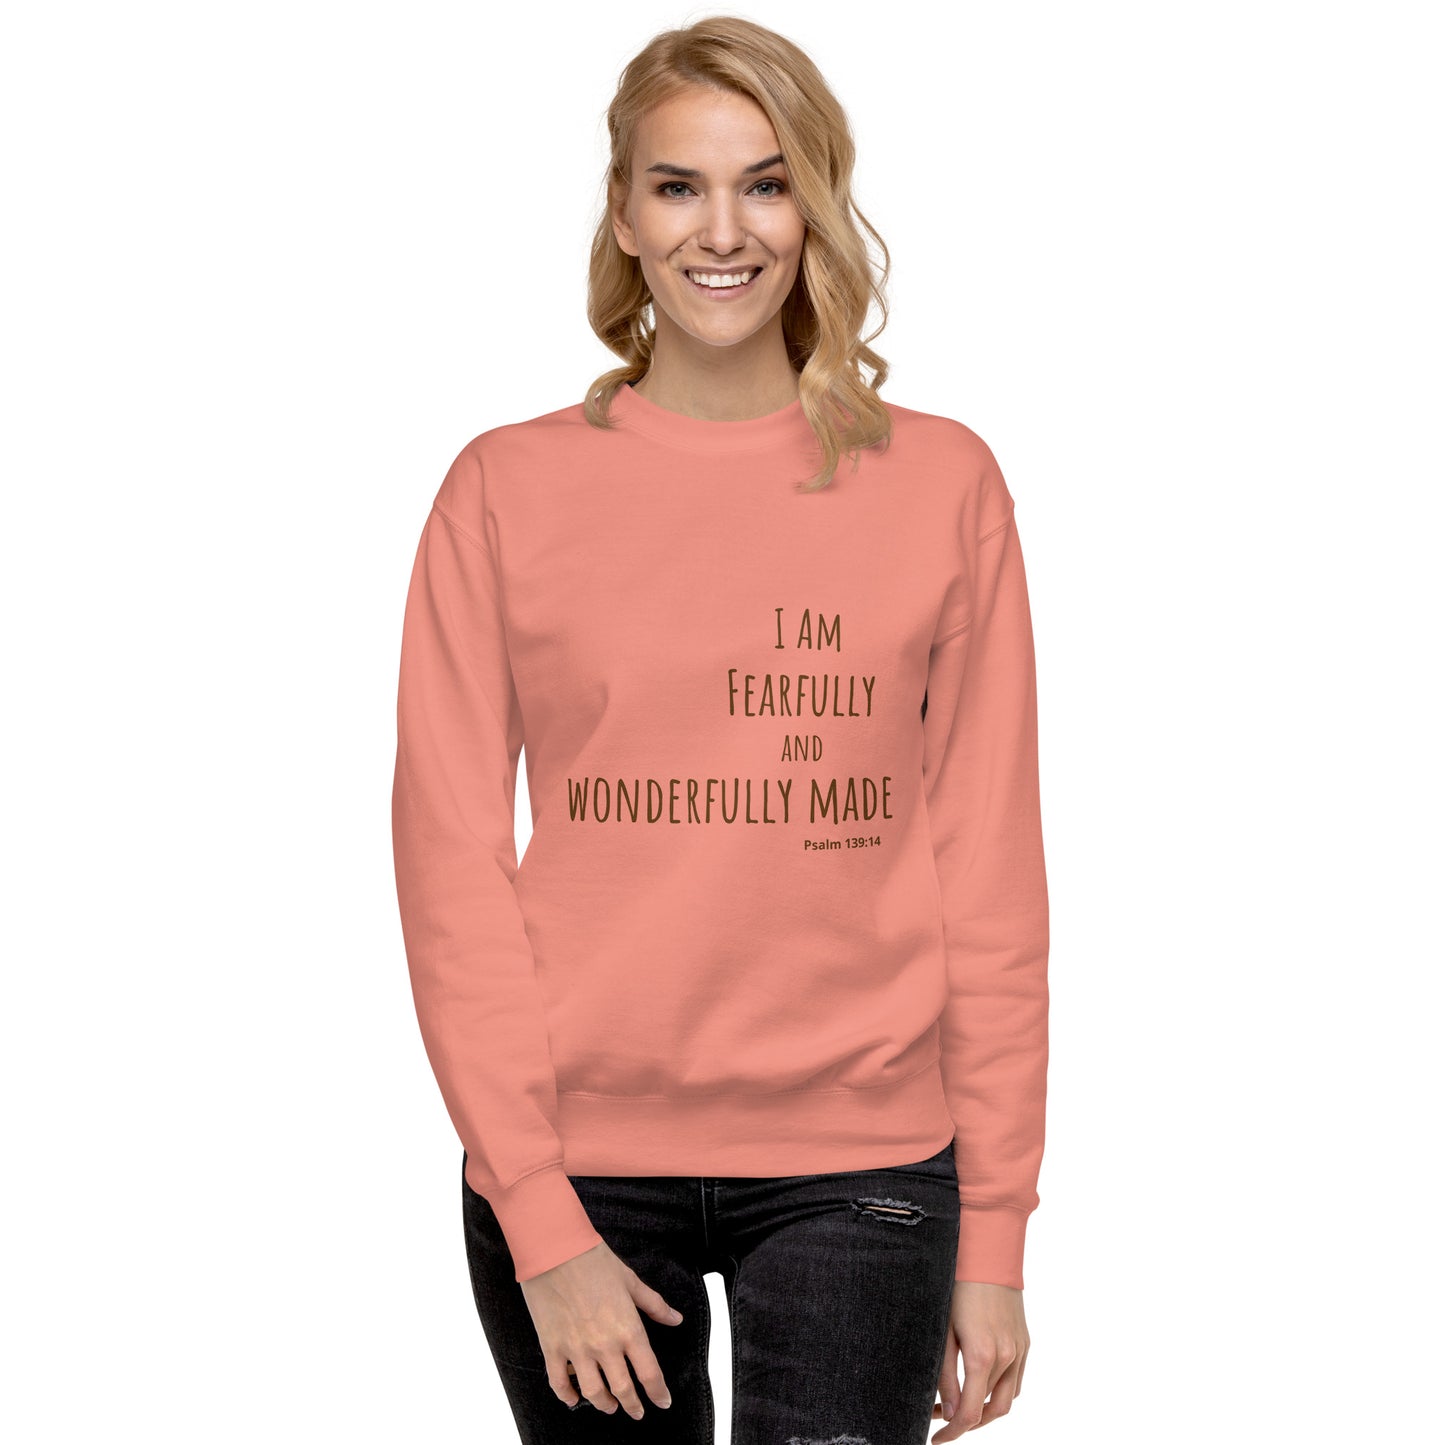 God Said - "Fearfully and Wonderfully Made" Unisex Premium Sweatshirt